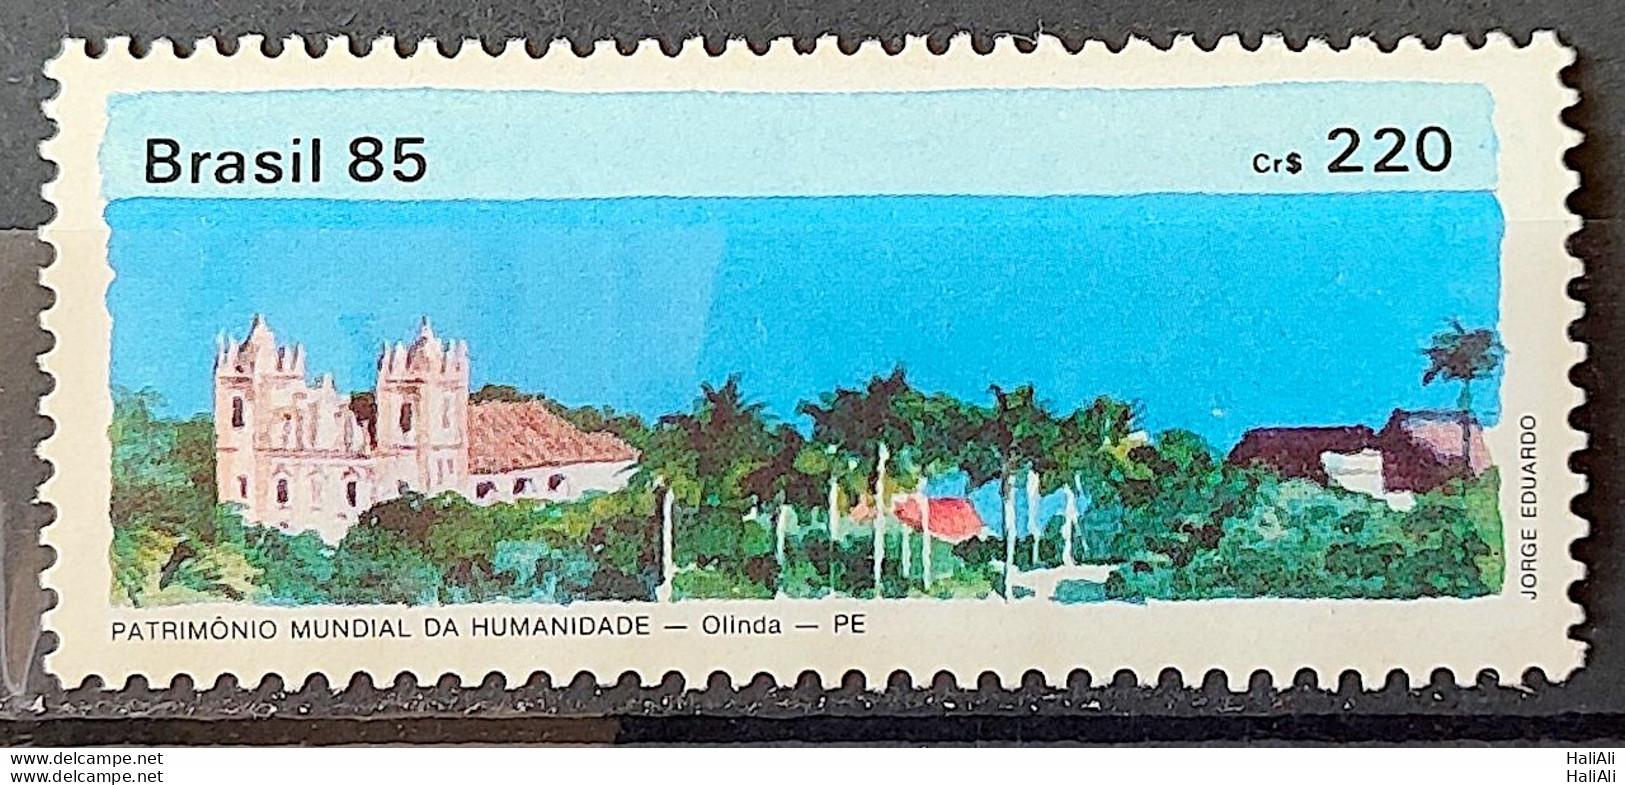 C 1449 Brazil Stamp World Heritage Of Humanity Olinda 1985 - Nuovi